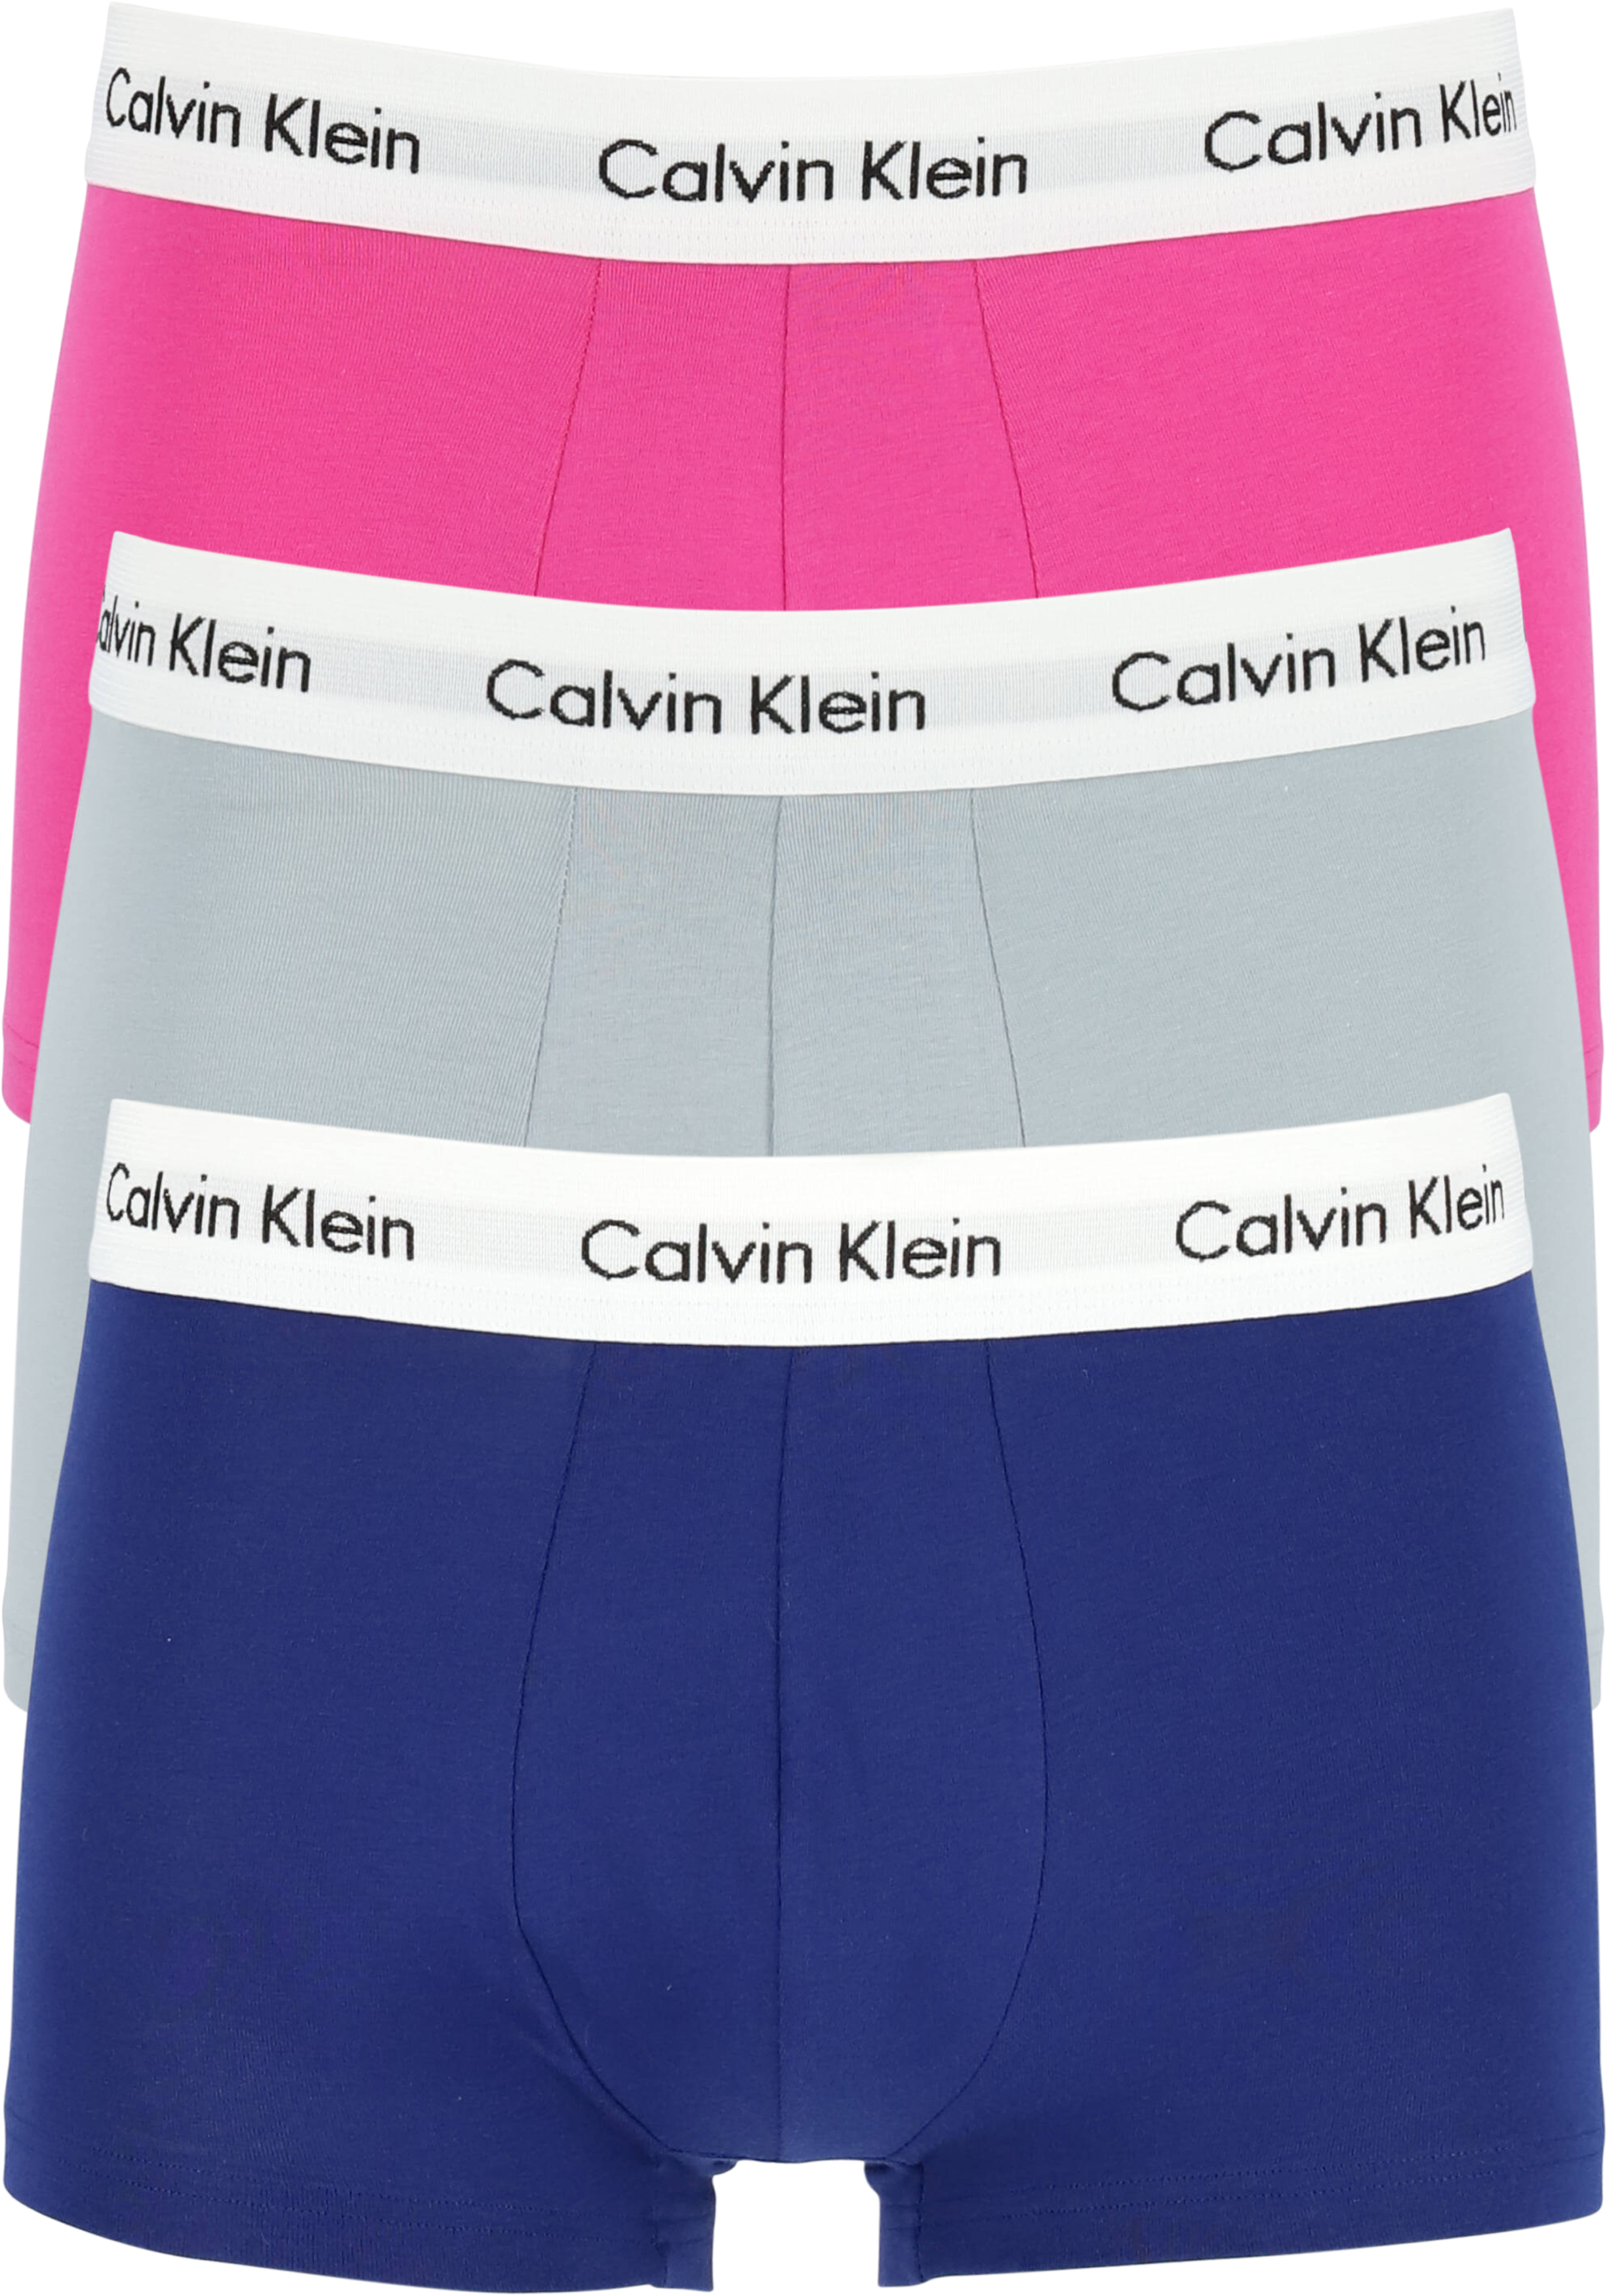 Calvin Klein low rise trunks (3-pack), lage boxers kort,... - DEALS: bestel vele artikelen van topmerken met